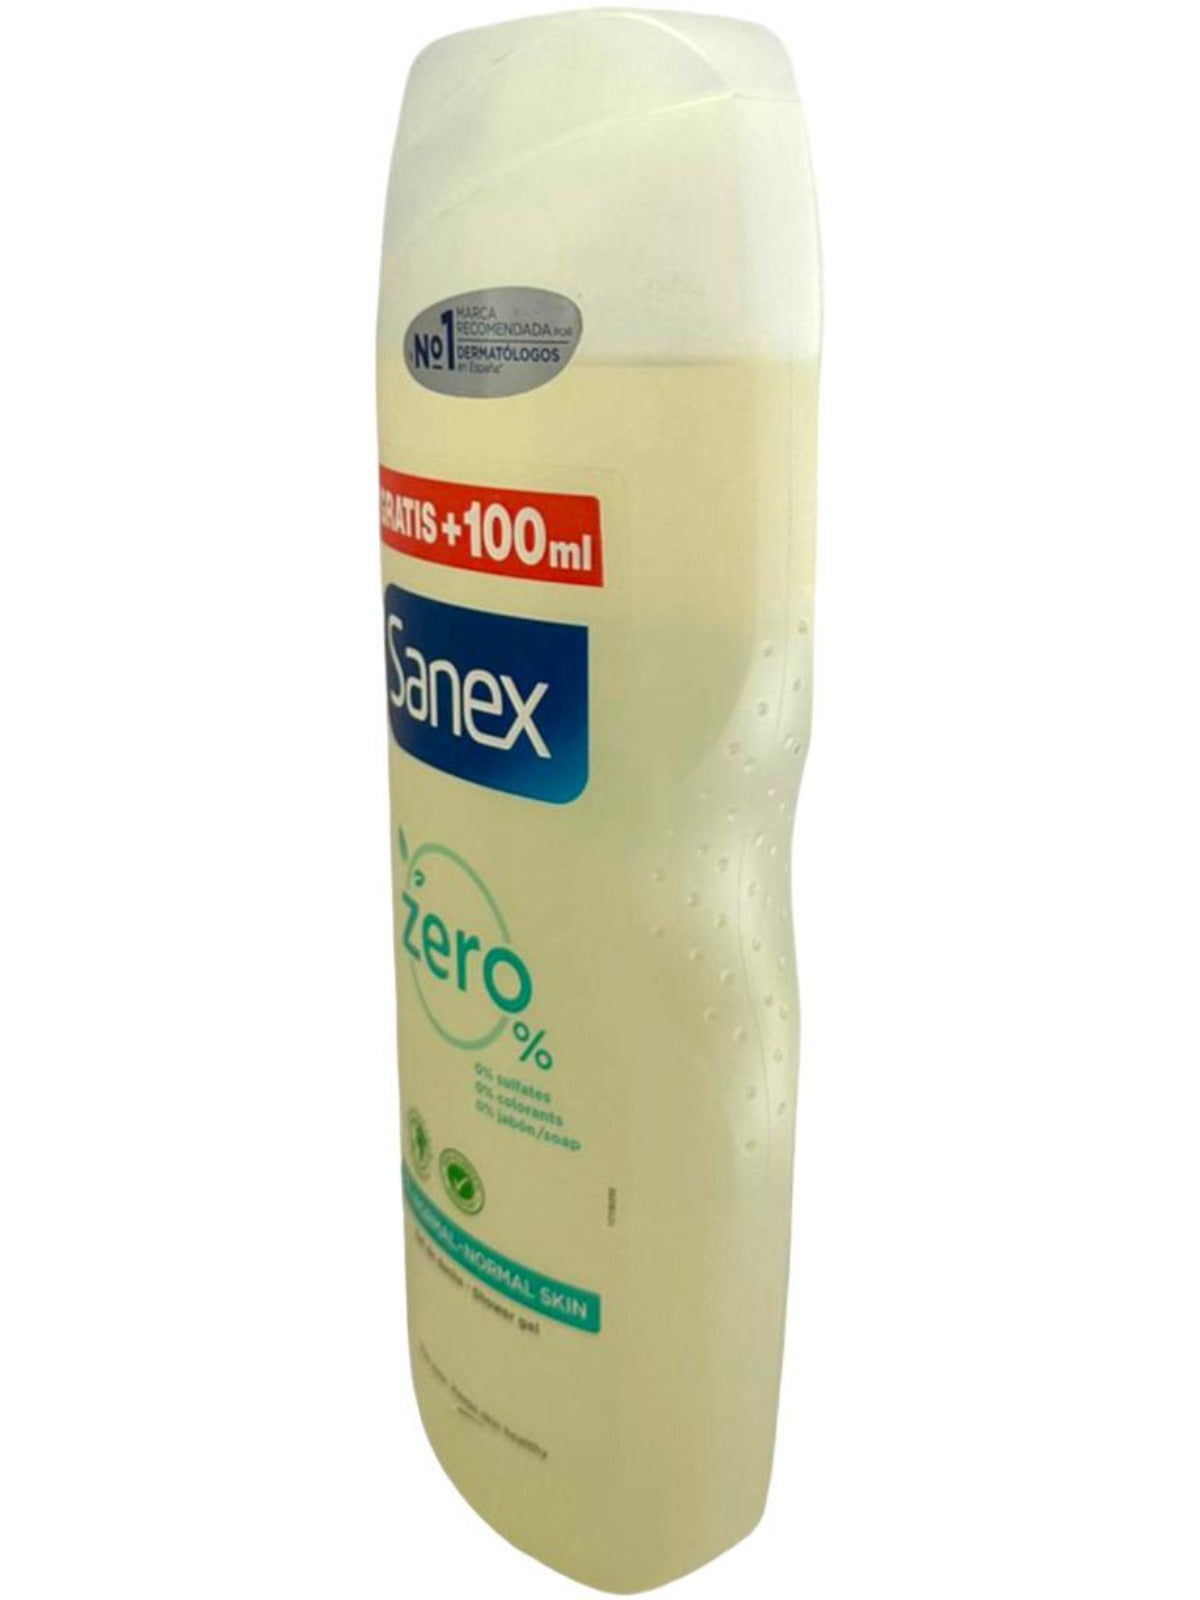 Sanex Spanish Shower Gel For Normal Skin 550+ 100ml